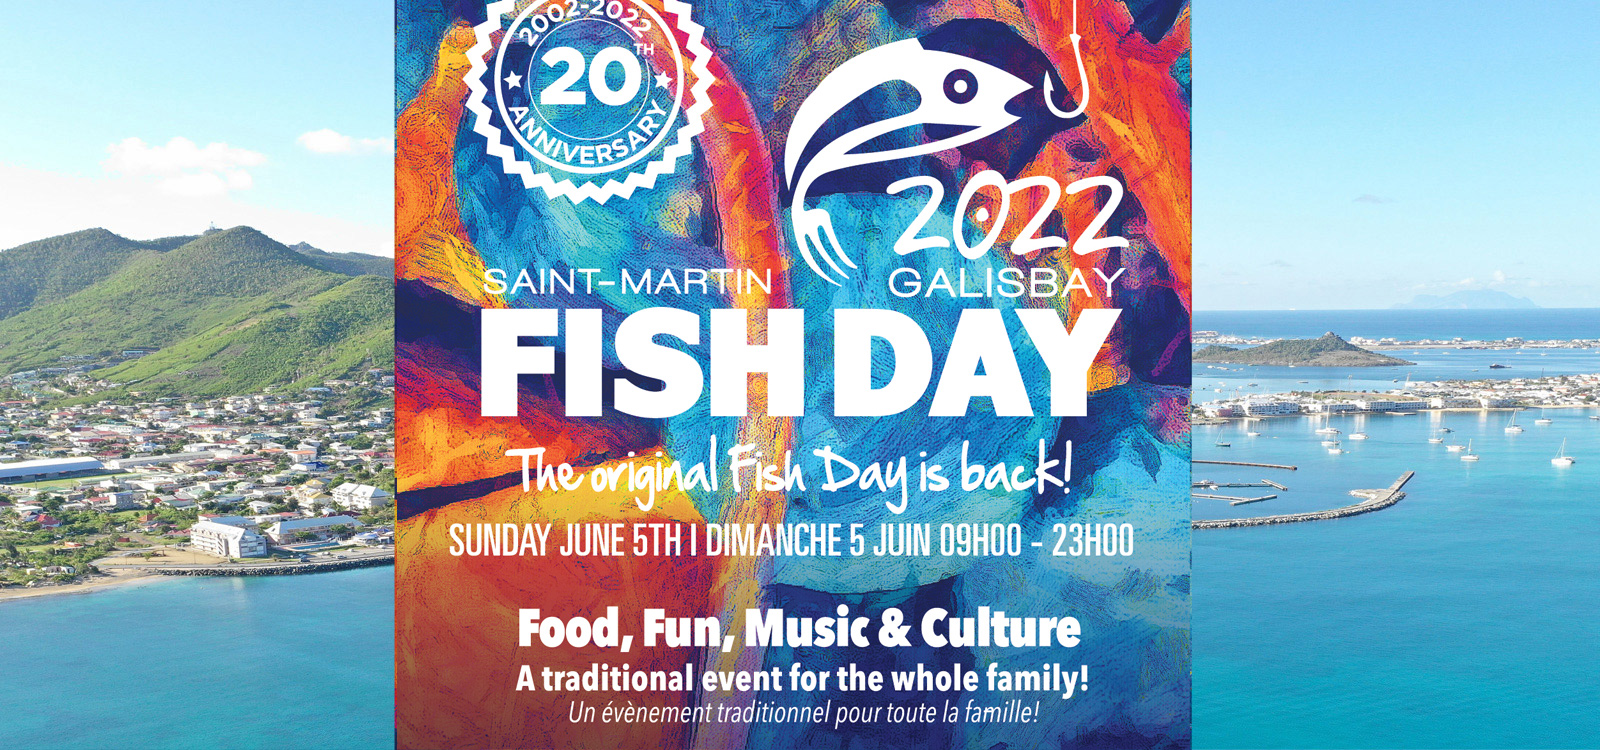 Le FISH DAY change de lieu et vous attend  Galisbay, le 5 juin